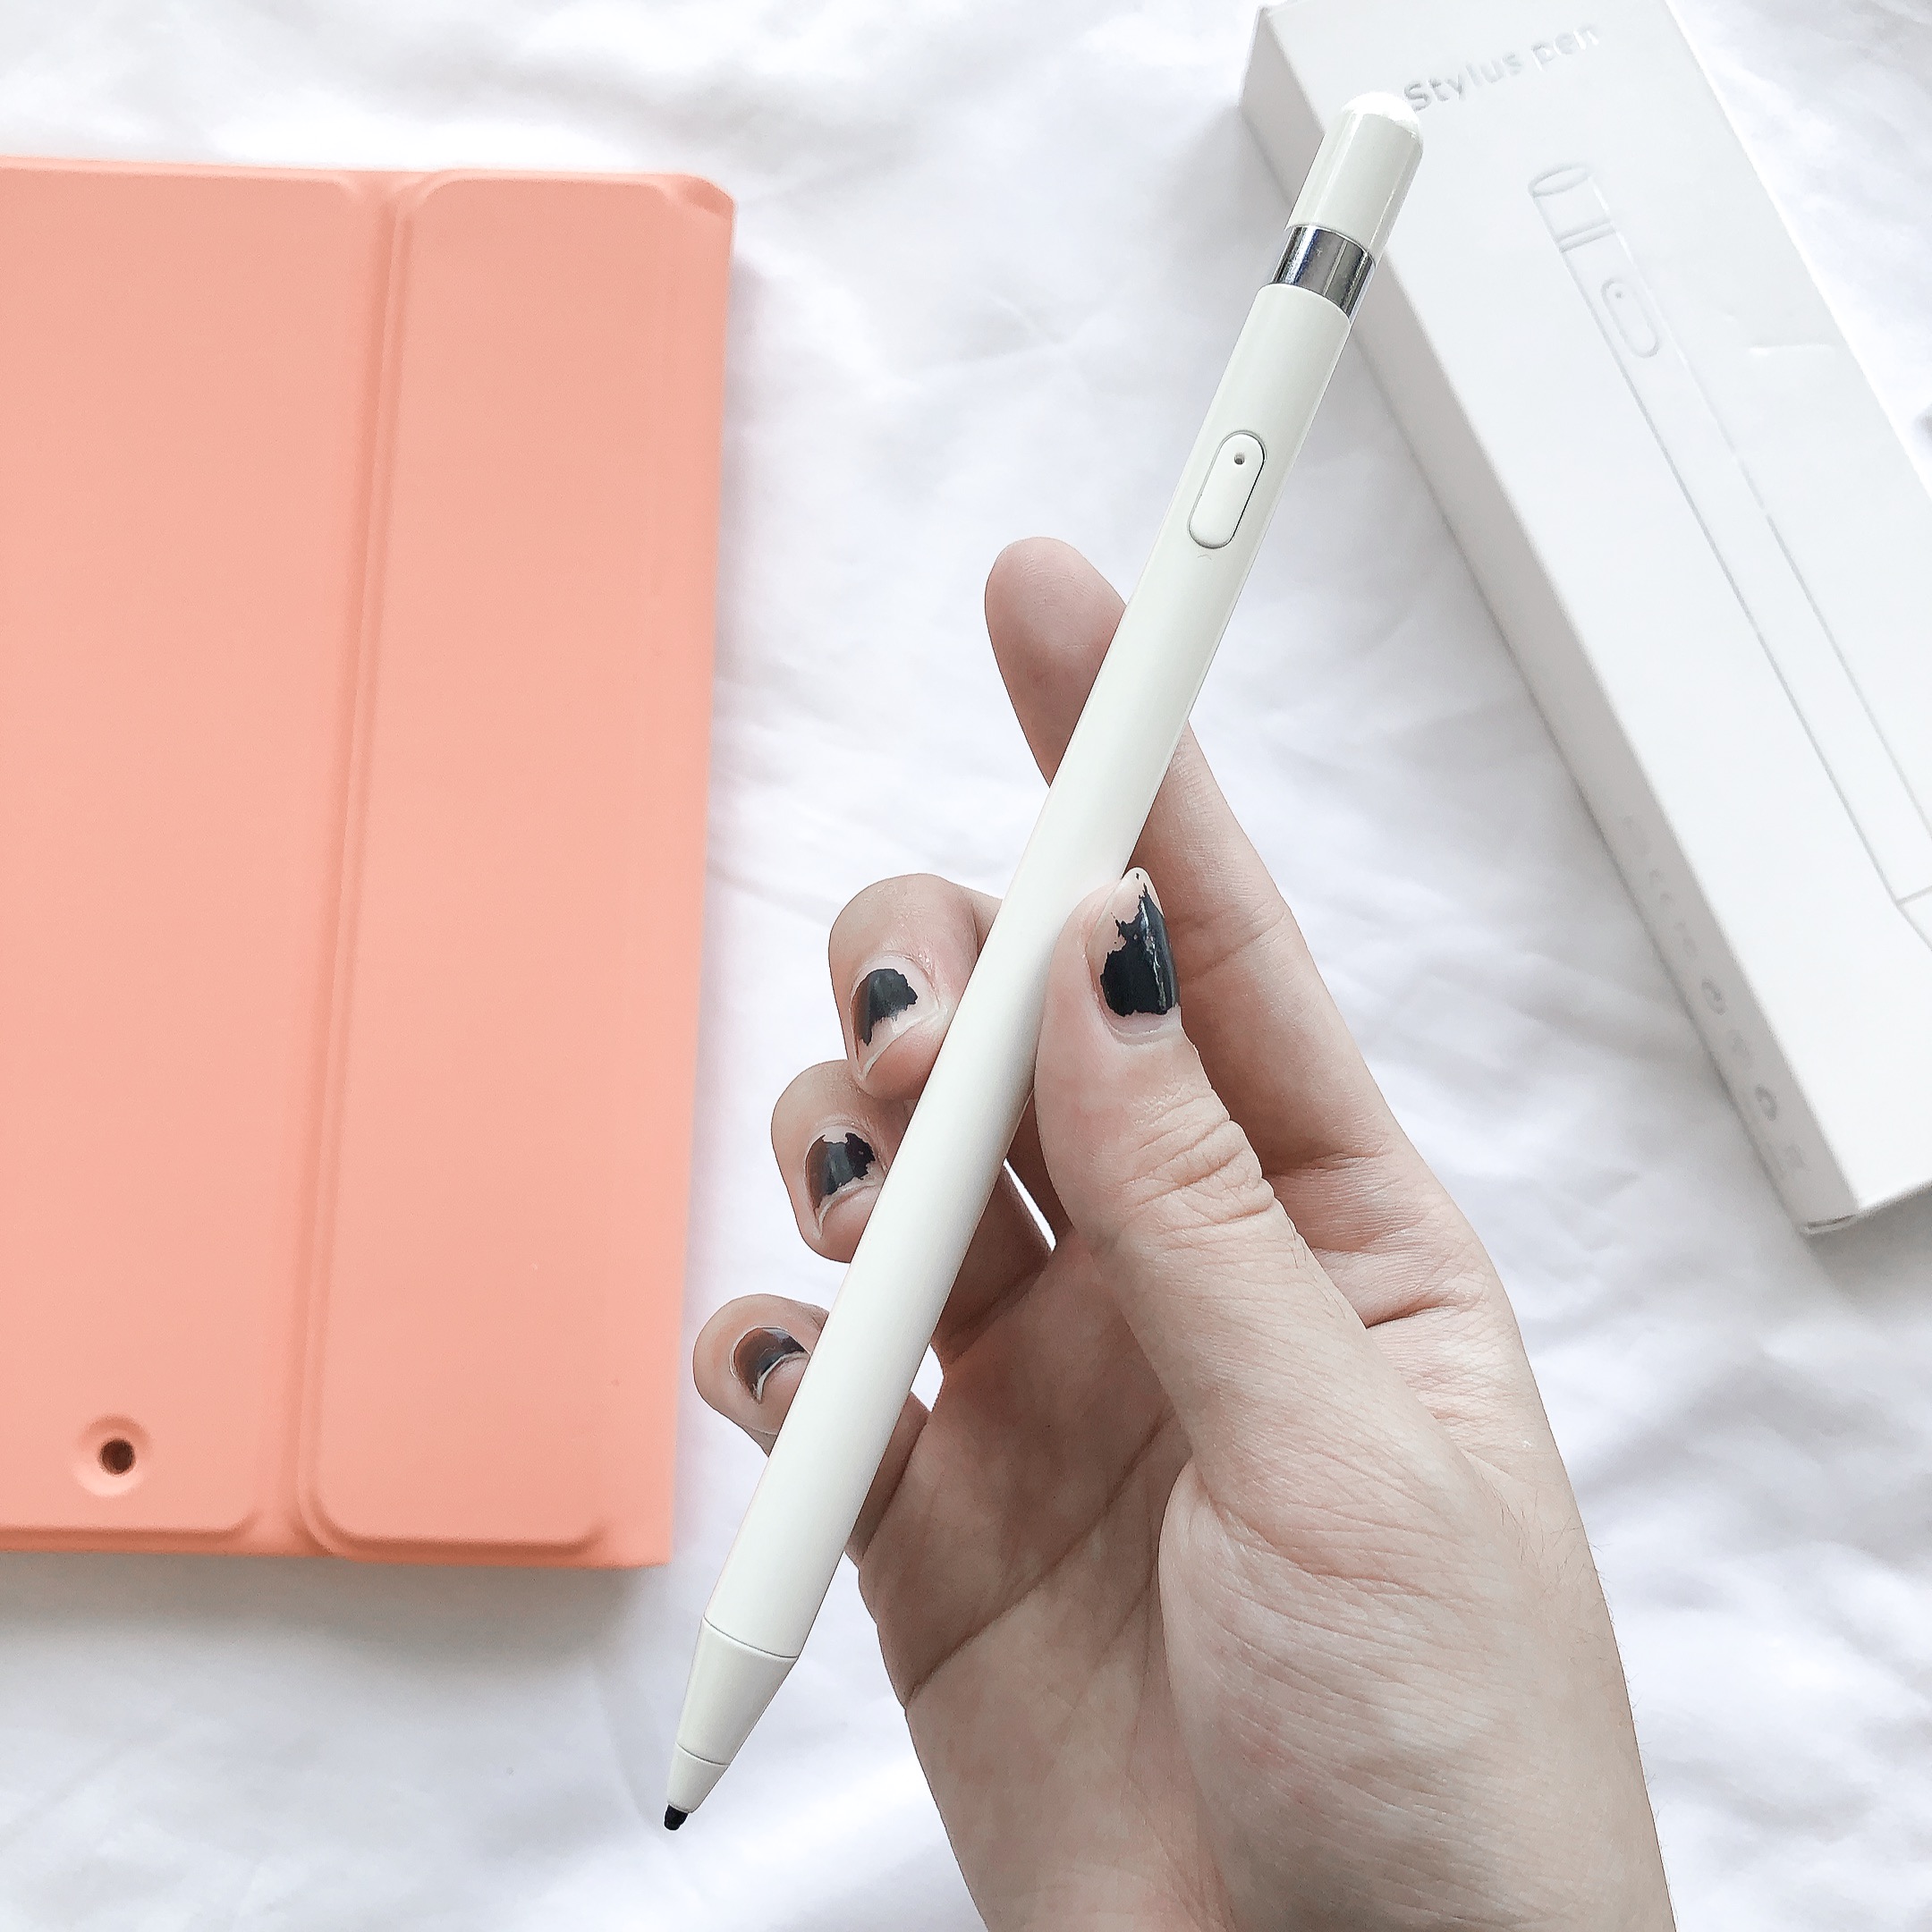 Bút Cảm Ứng Stylus Pen Cho Điện Thoại Máy Tính Bảng iPad - Hàng Chính Hãng